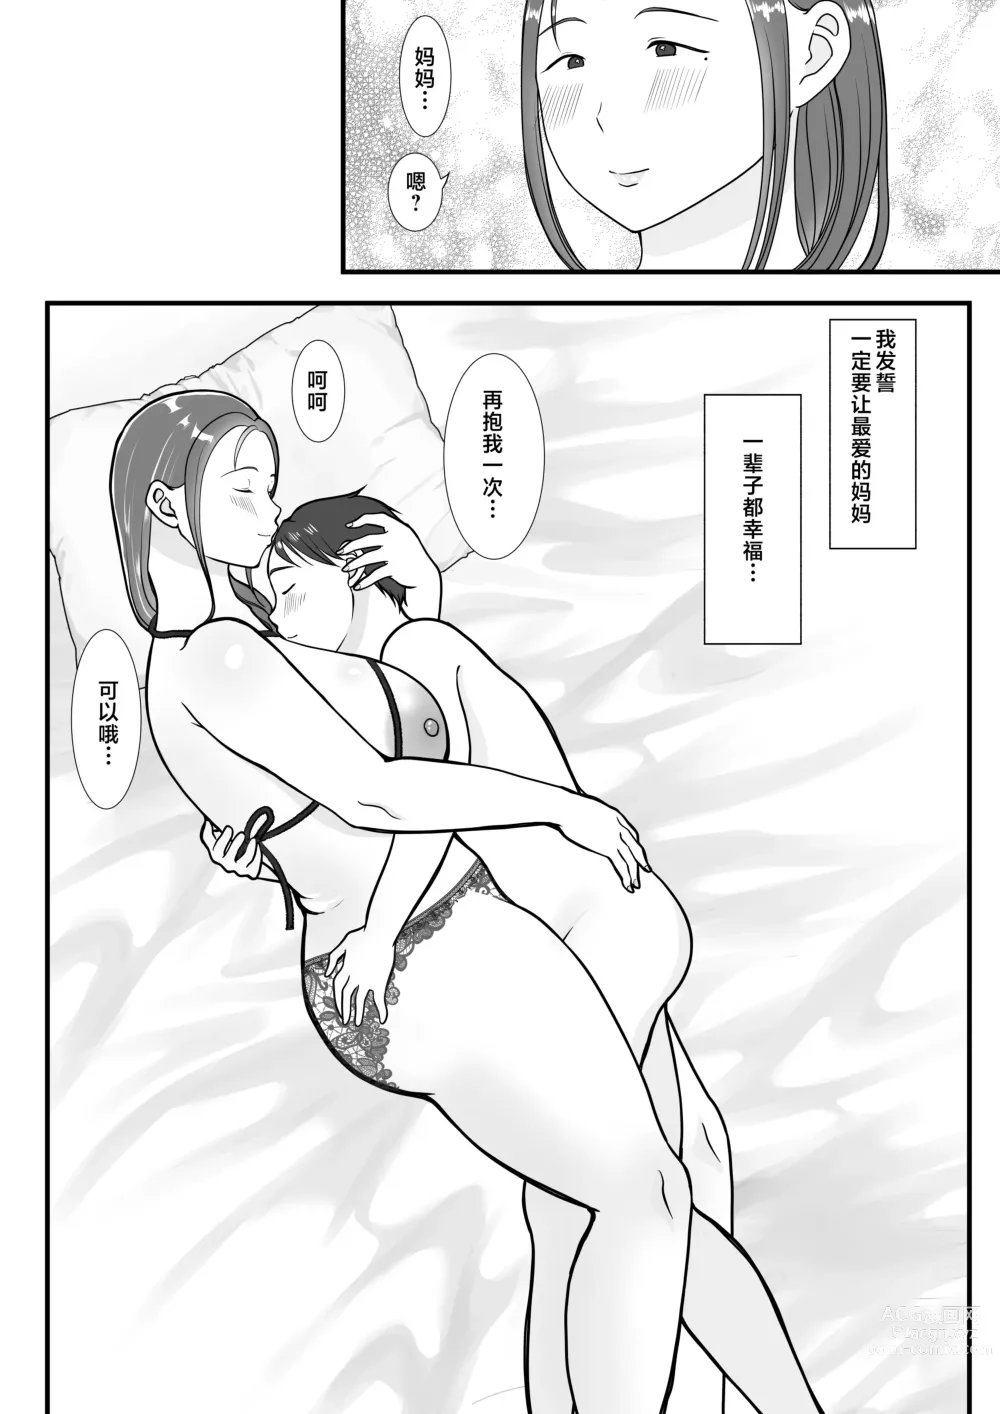 Page 72 of doujinshi Boku wa Haha ni Gachikoi Shiteru 1